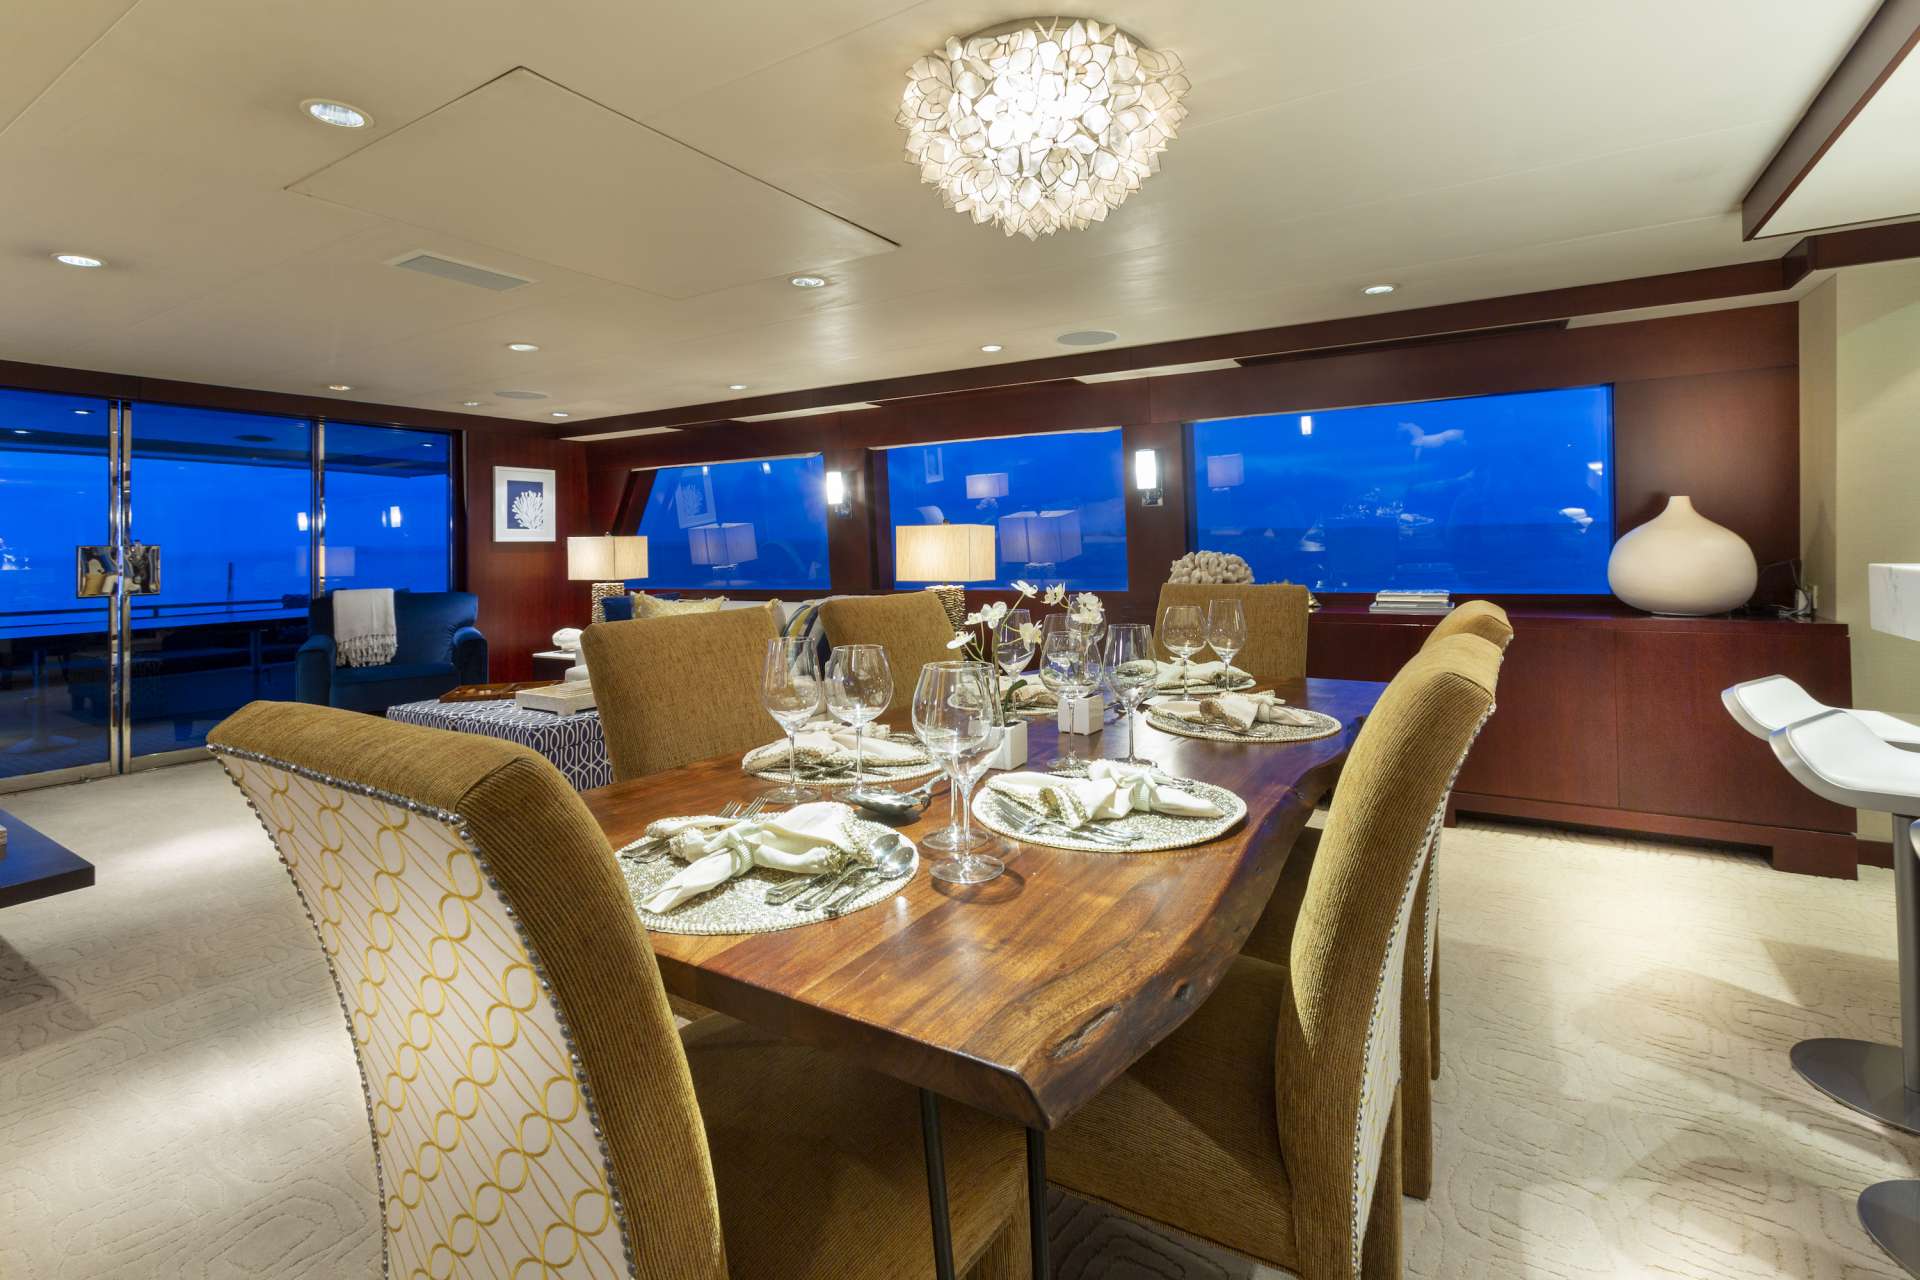 Motor Yacht 'CRU' Dining Area, 6 PAX, 4 Crew, 96.00 Ft, 29.00 Meters, Built 1991, Westship, Refit Year 2019